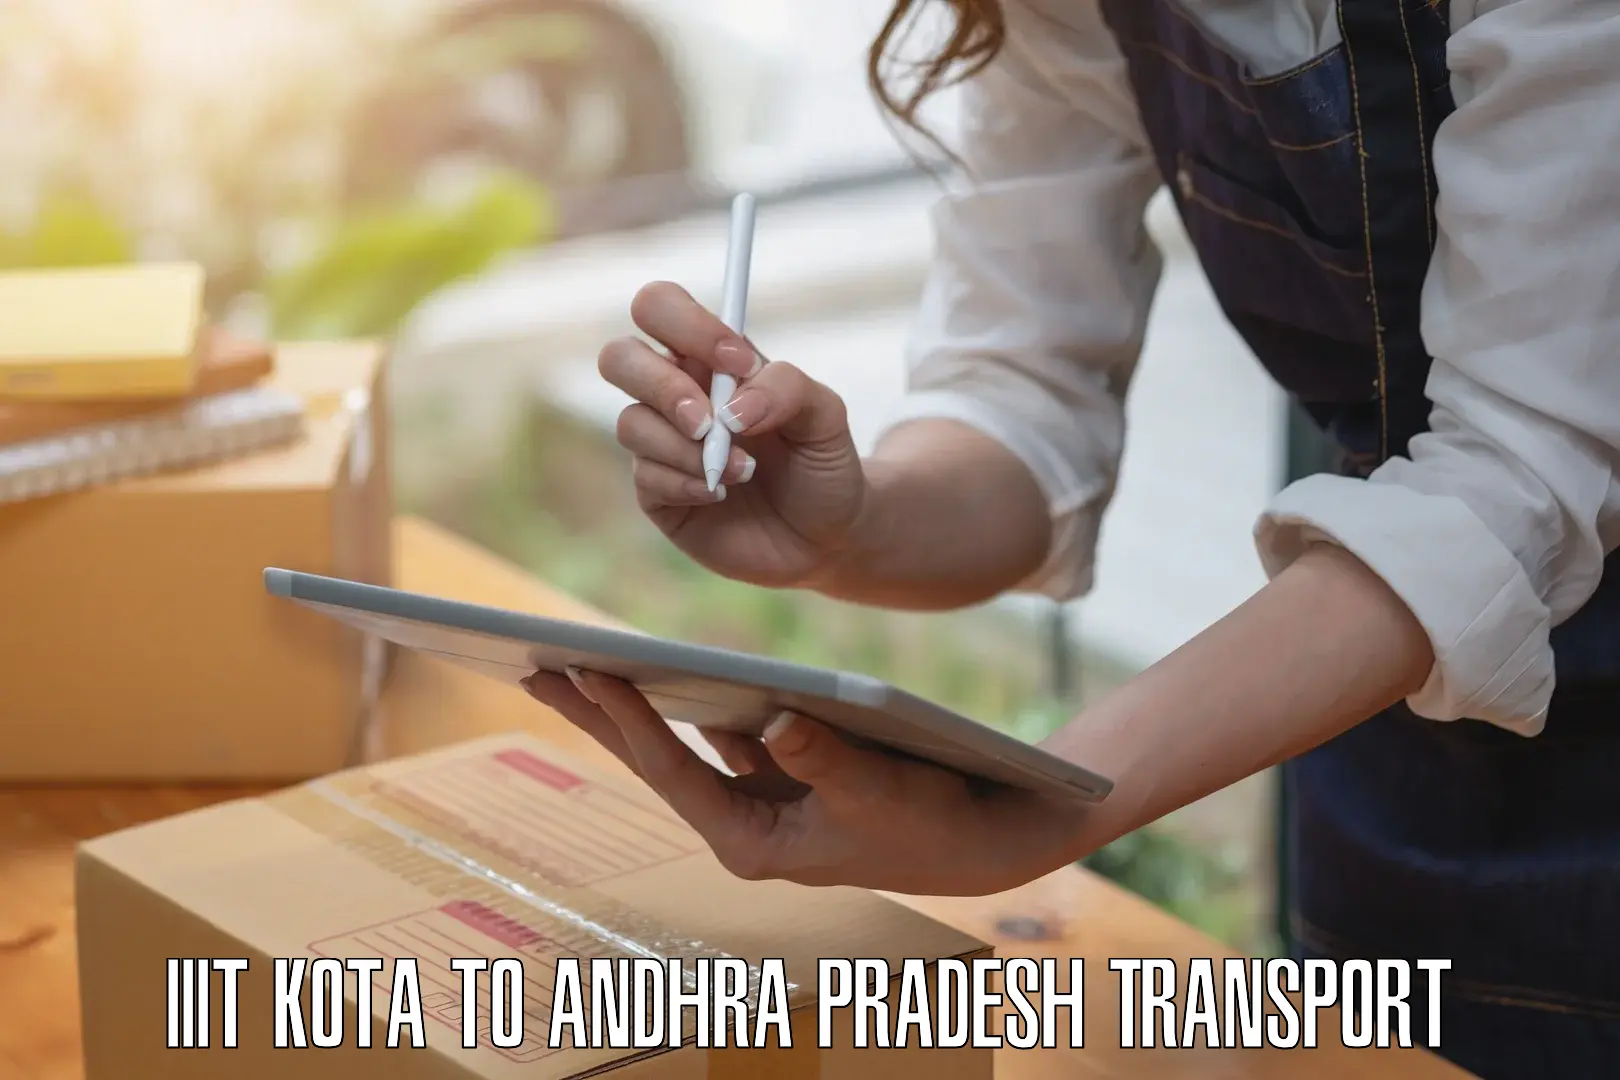 Door to door transport services in IIIT Kota to Andhra Pradesh